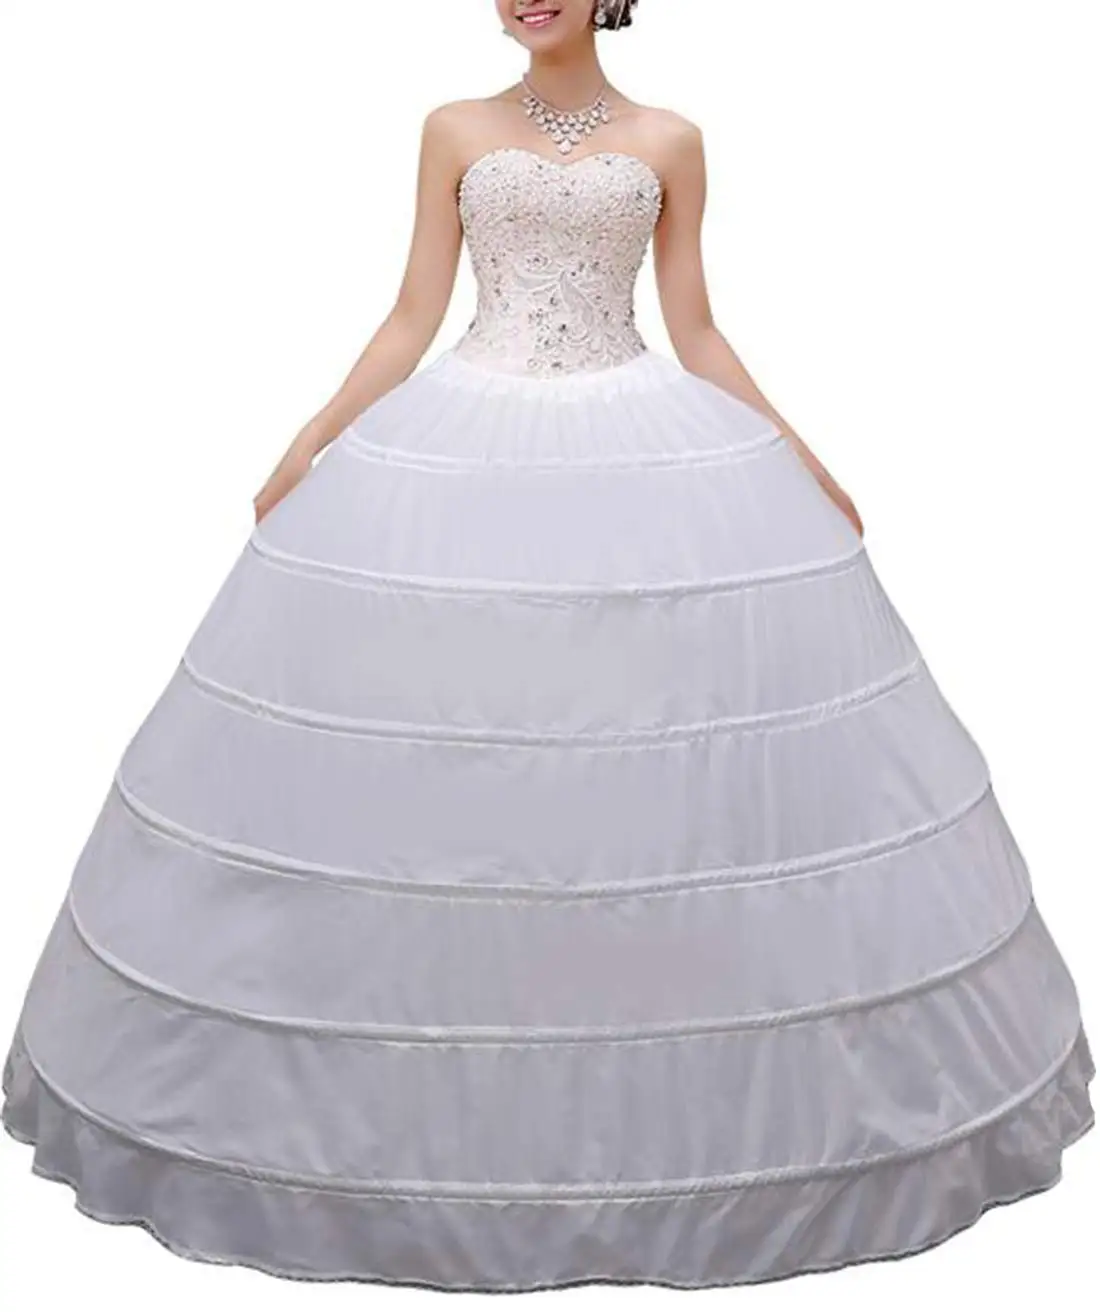 Women Crinoline Petticoat A-line 6 Hoop Skirt Slips Long Underskirt for Wedding Bridal Dress Ball Gown White 2022